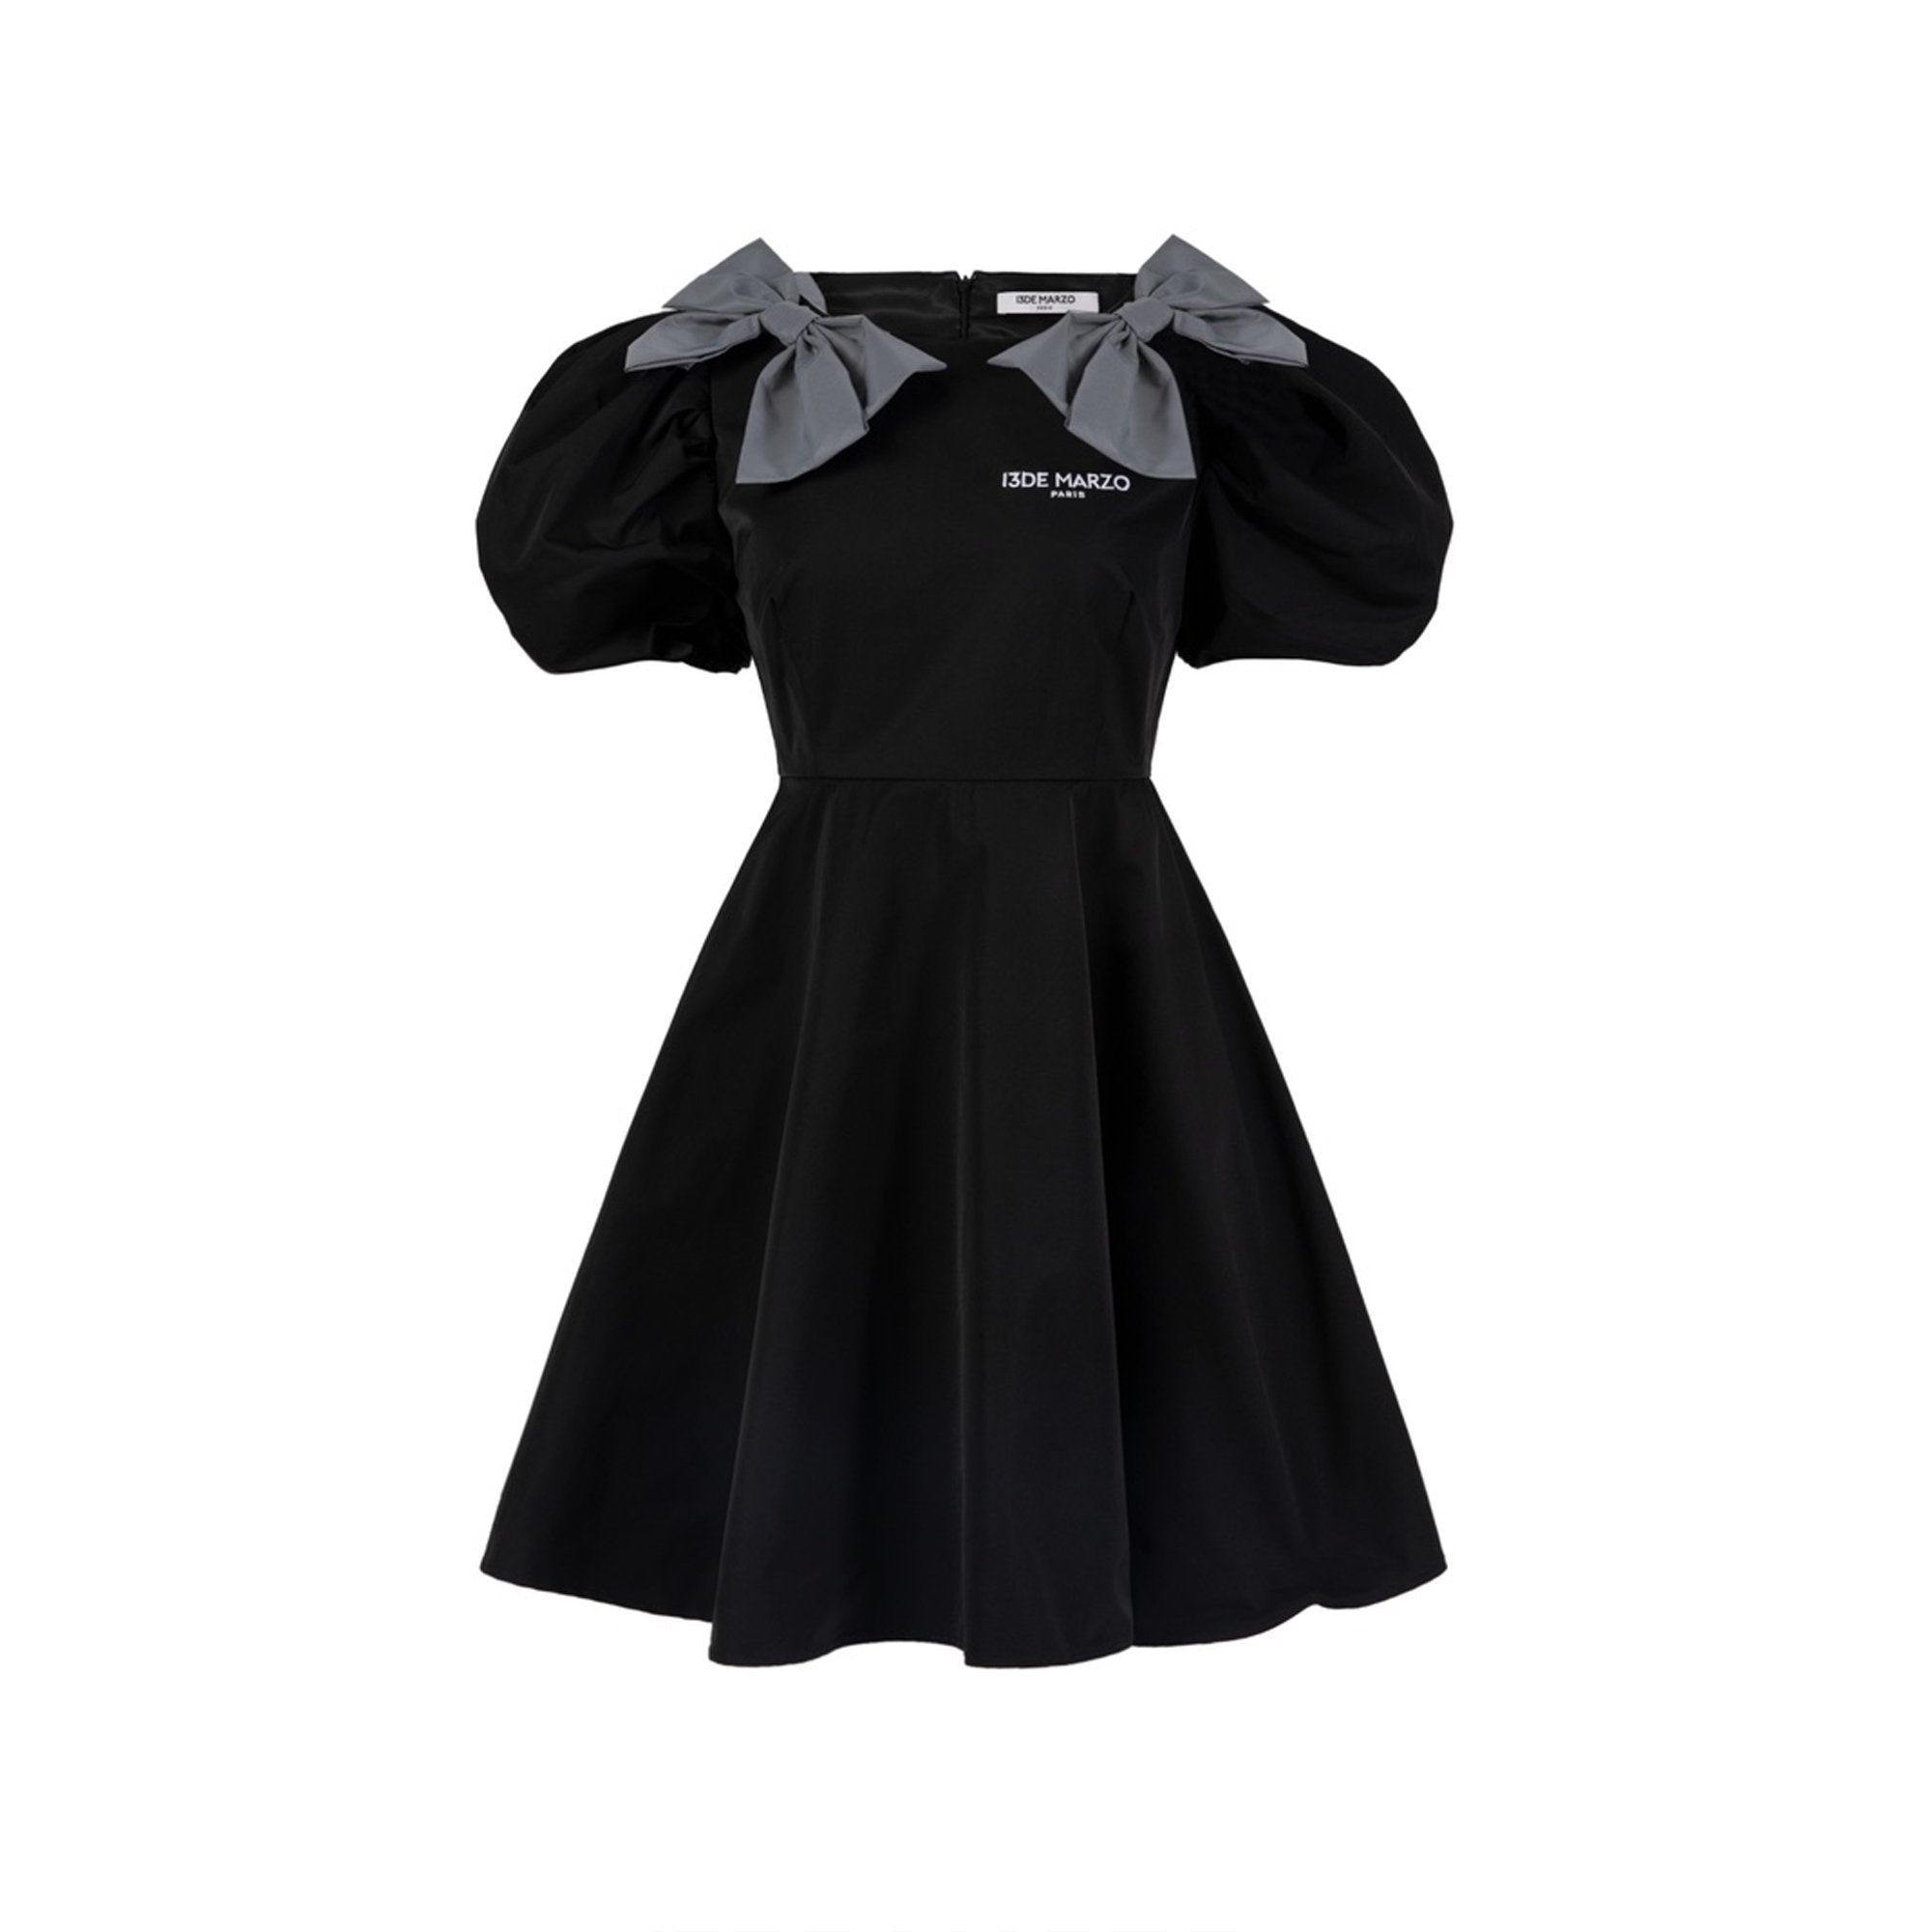 13 DE MARZO 3M Reflect Bowknot Dress Black | MADA IN CHINA